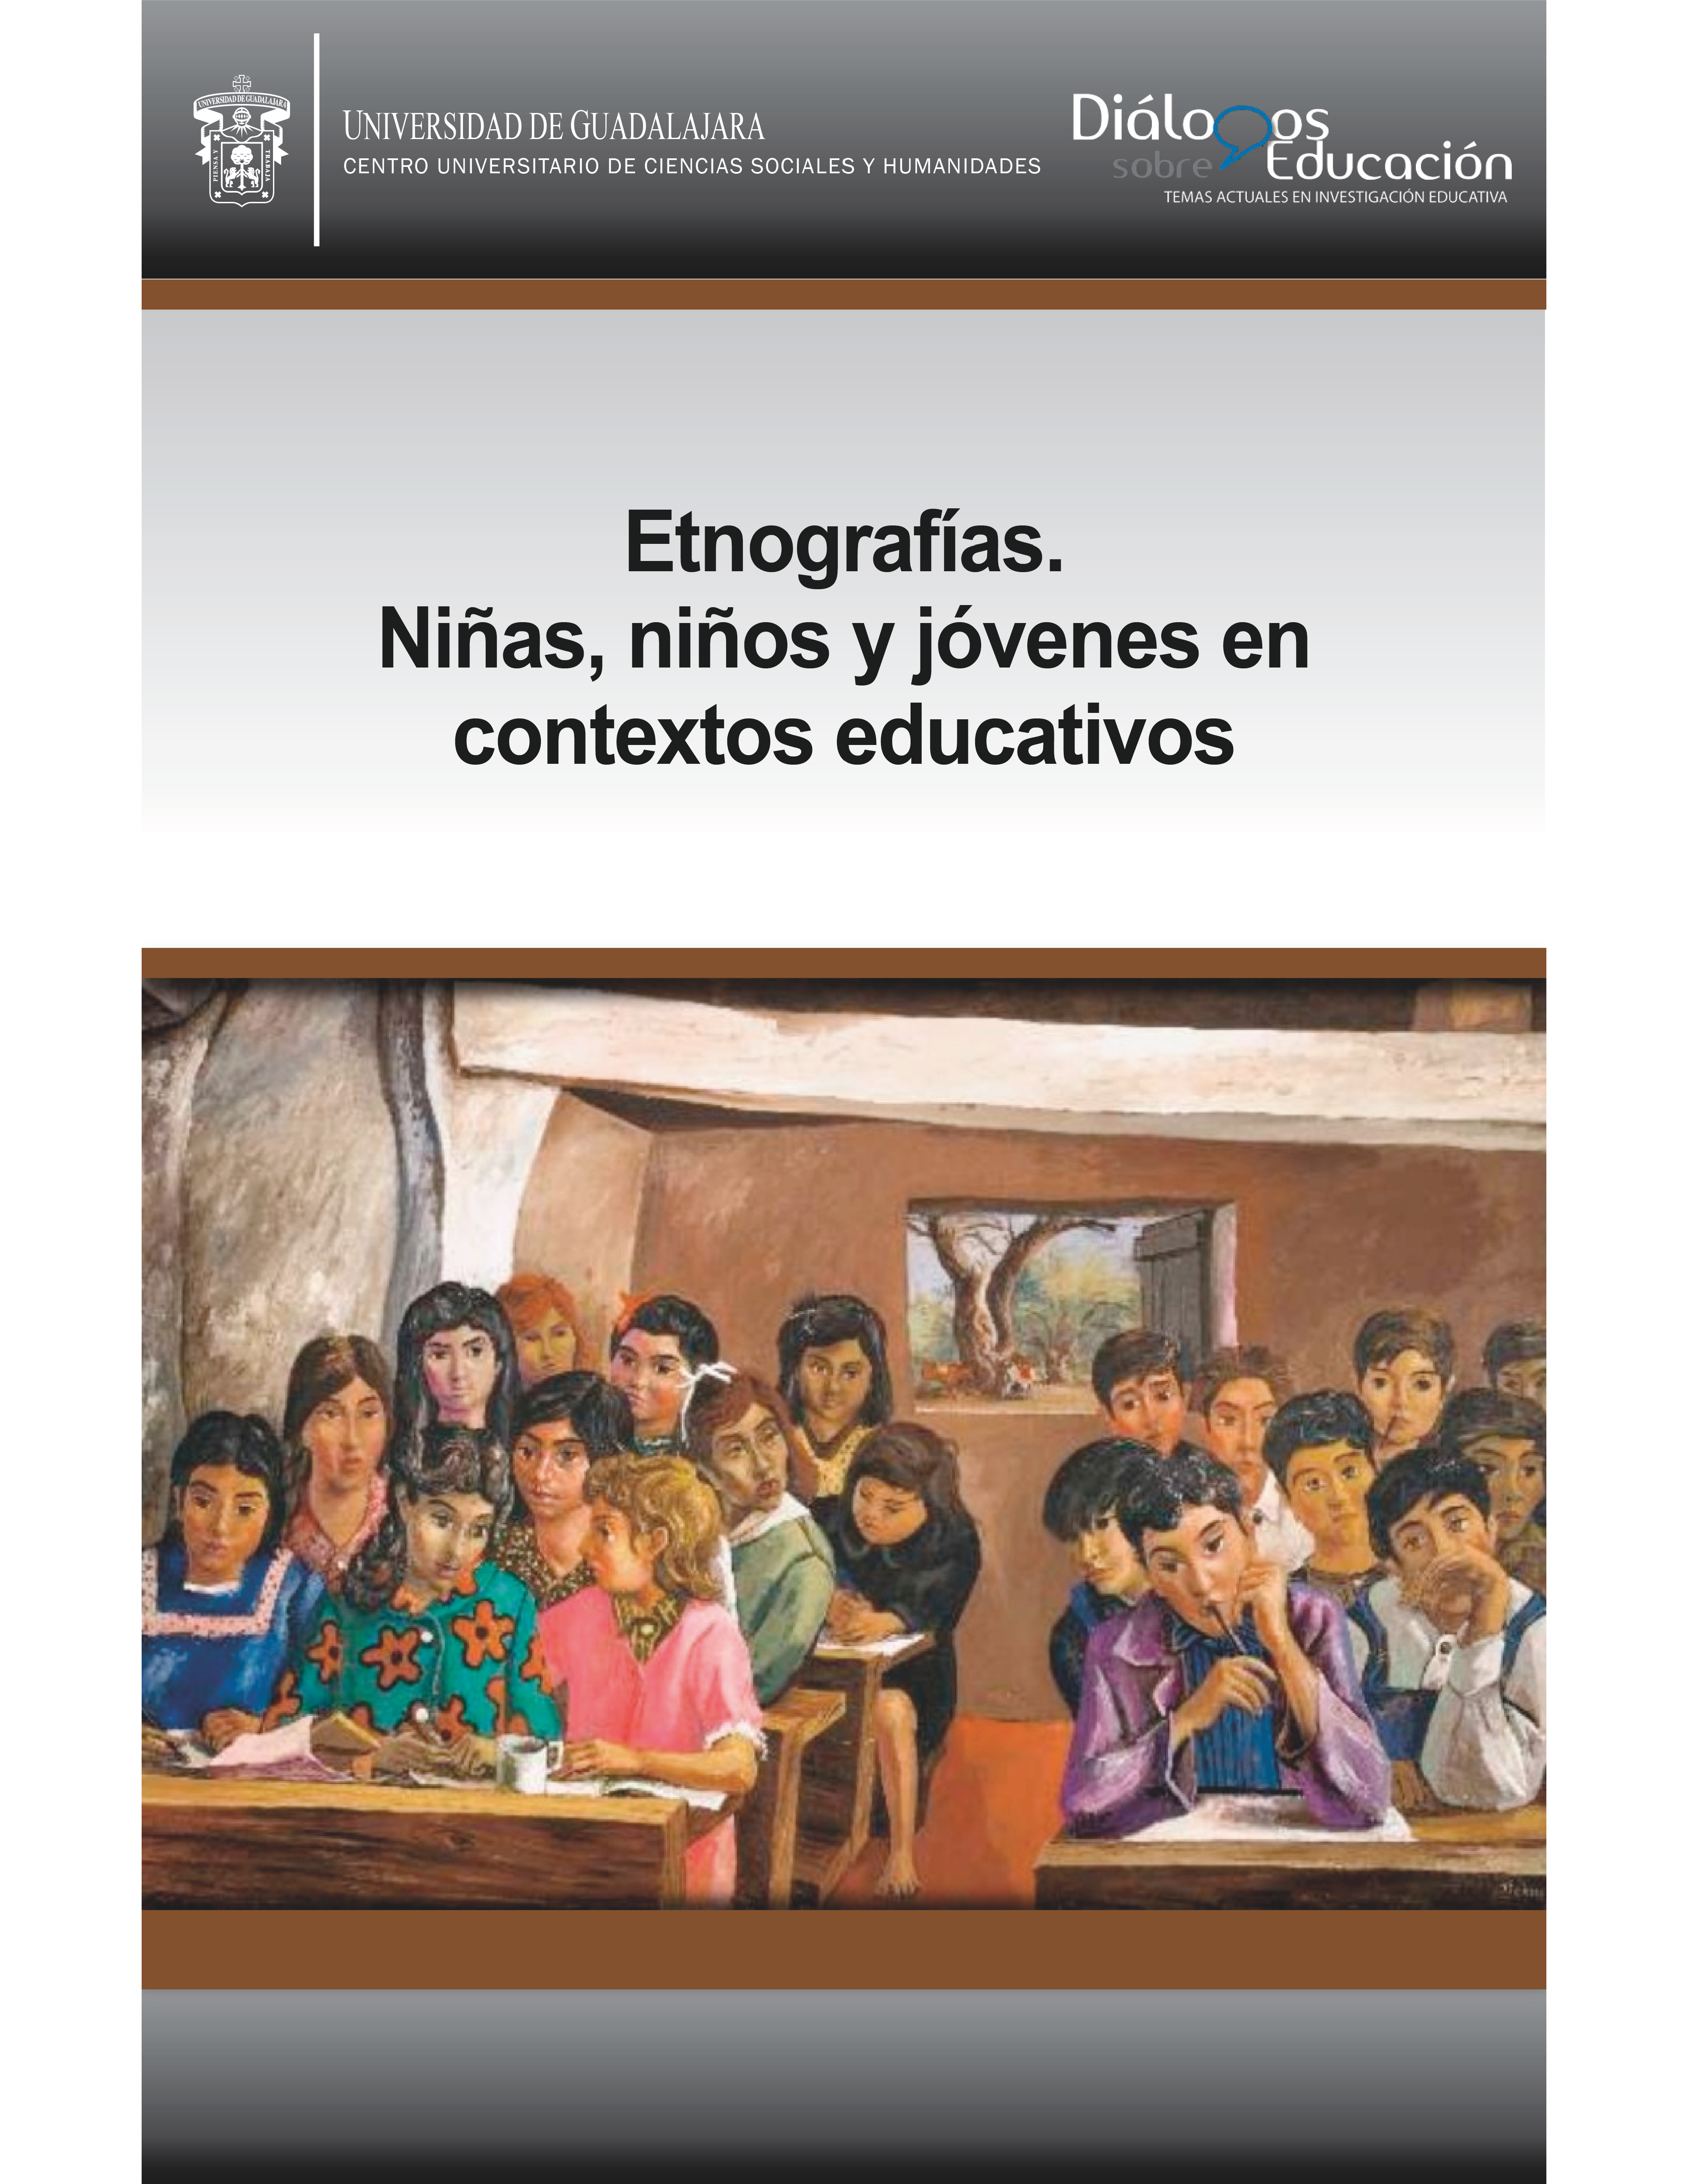 					Visualizar n. 20 (11): Etnografías. Niñas, niños y jóvenes en contextos educativos. Enero-junio 2020
				